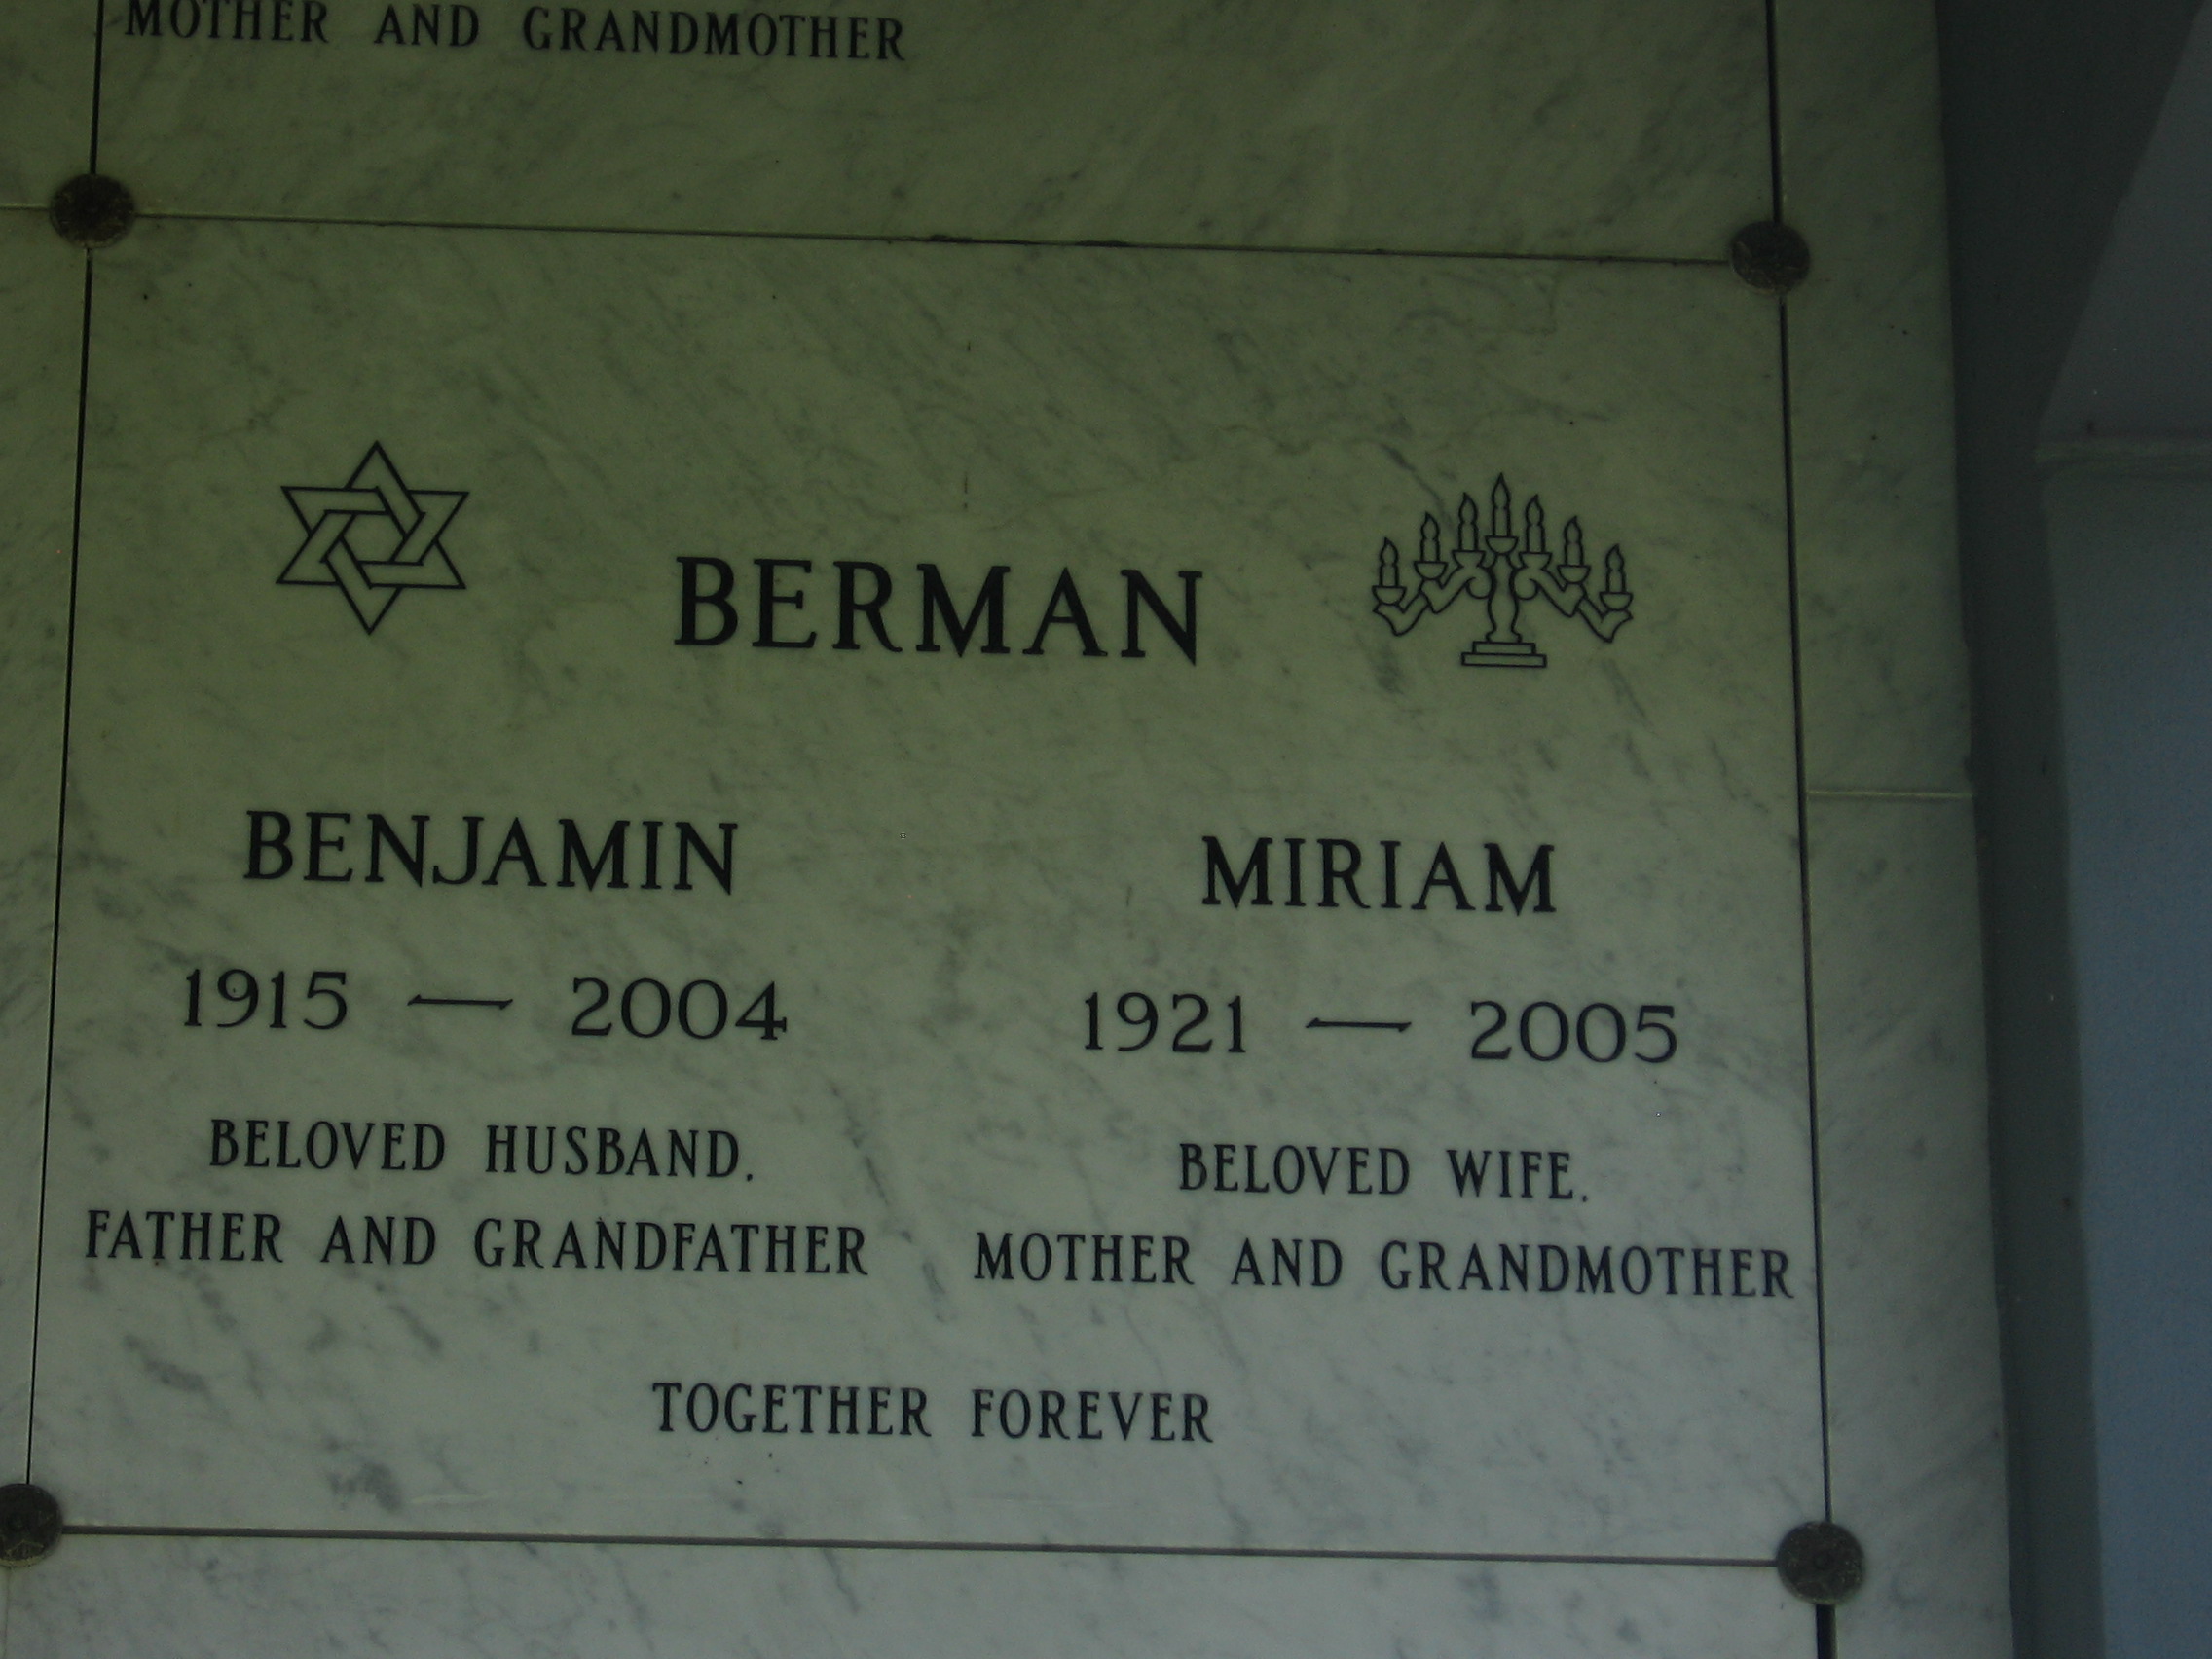 Miriam Berman